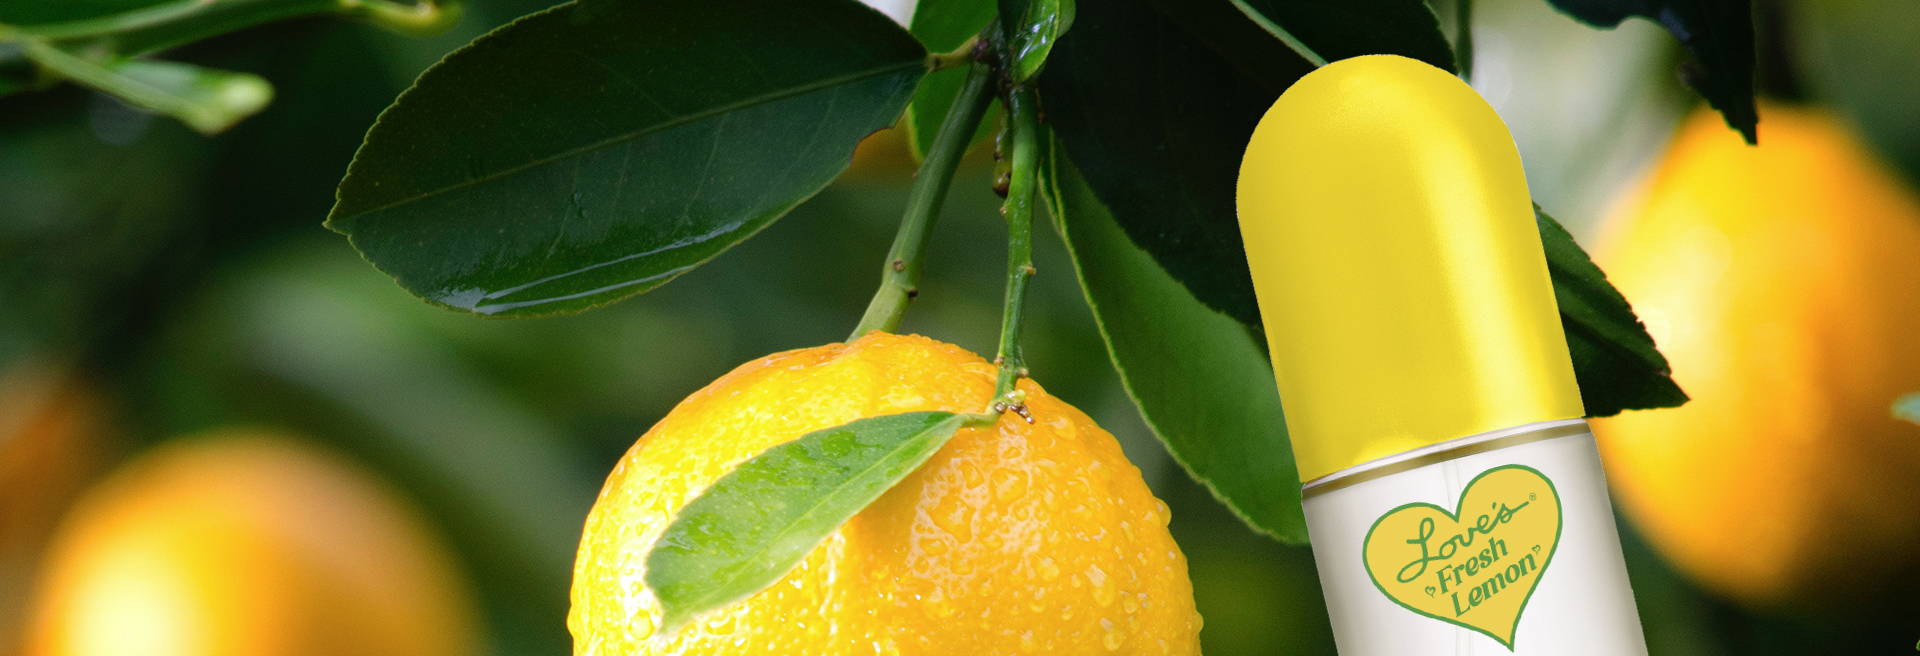 Bottle of Love's Fresh Lemon hanging in lemon tree next to lemons.